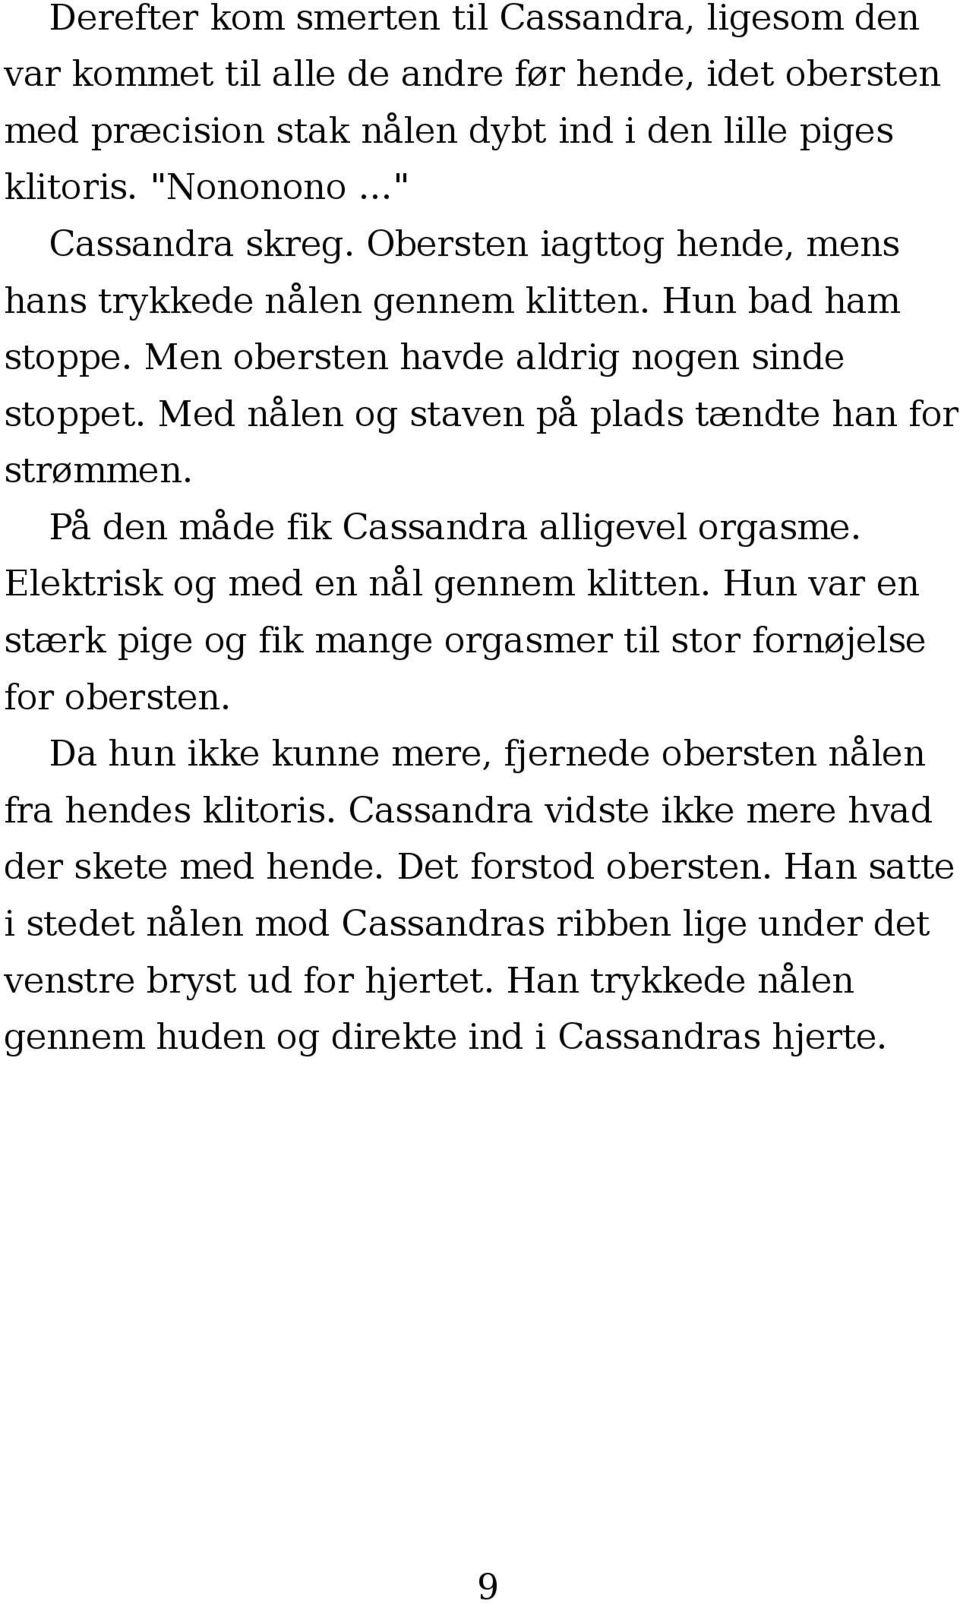 e erotika.dk Kvinder i knibe 1 15 noveller - PDF Gratis download